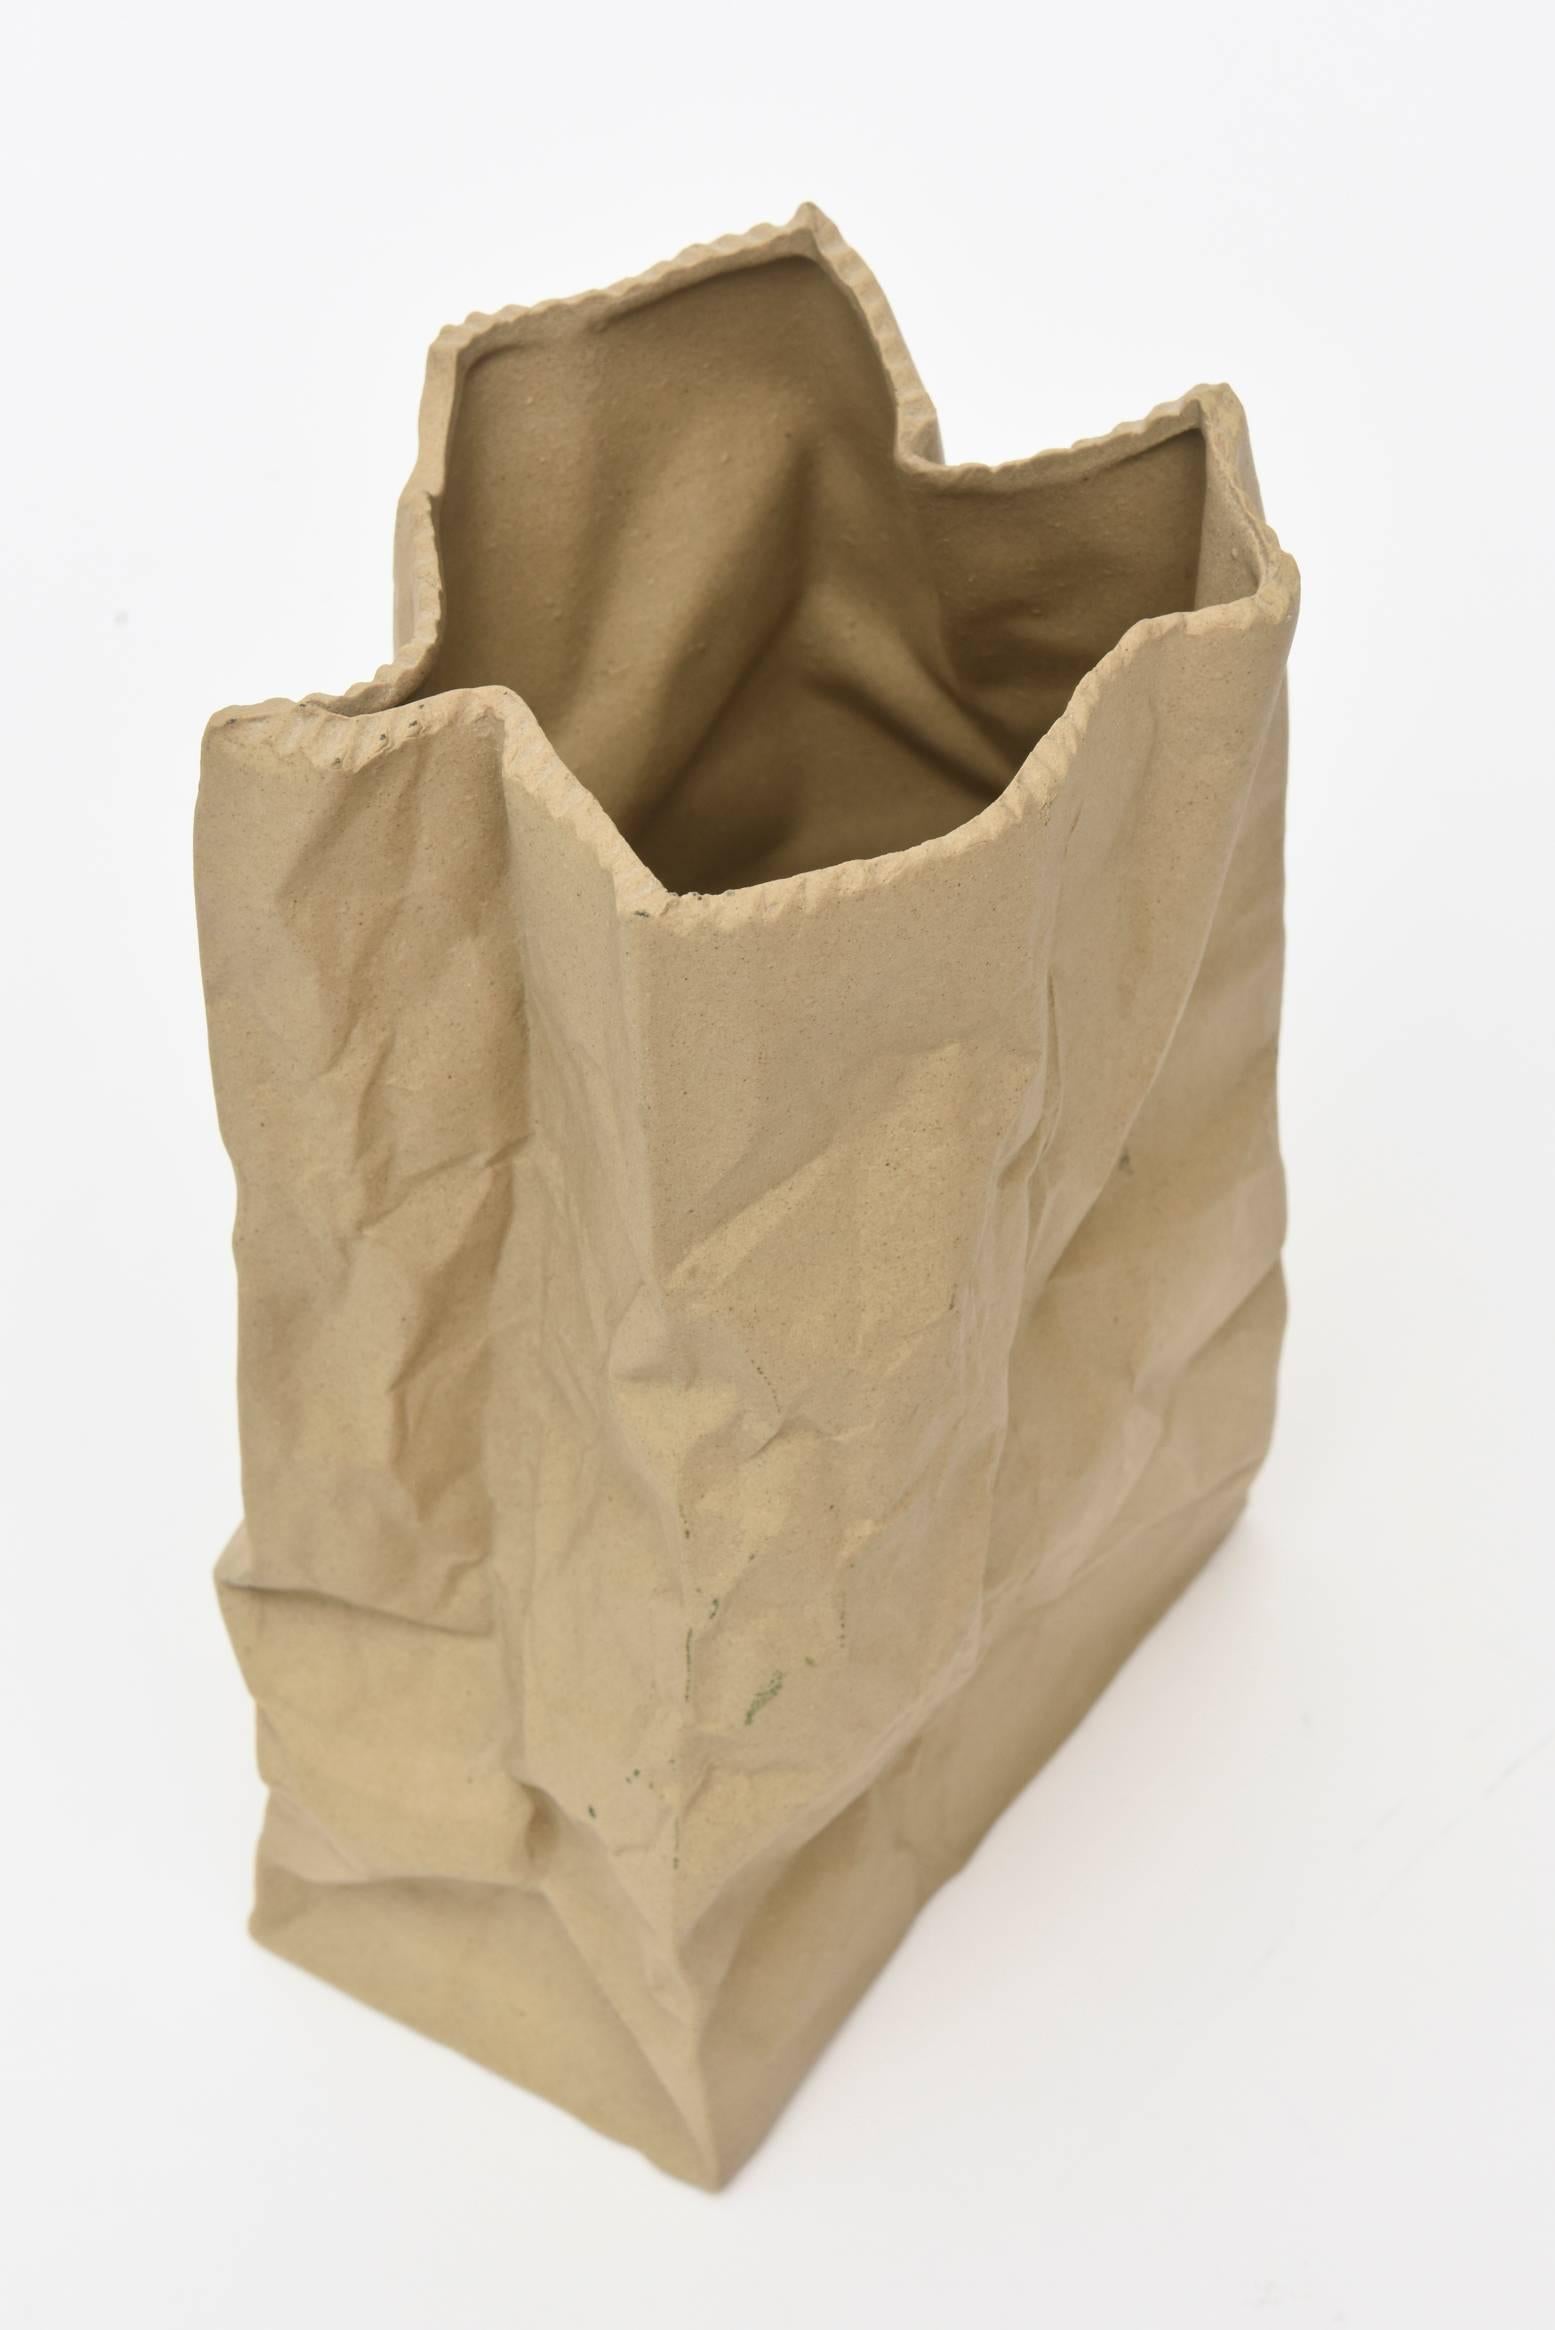 ceramic brown paper bag vase